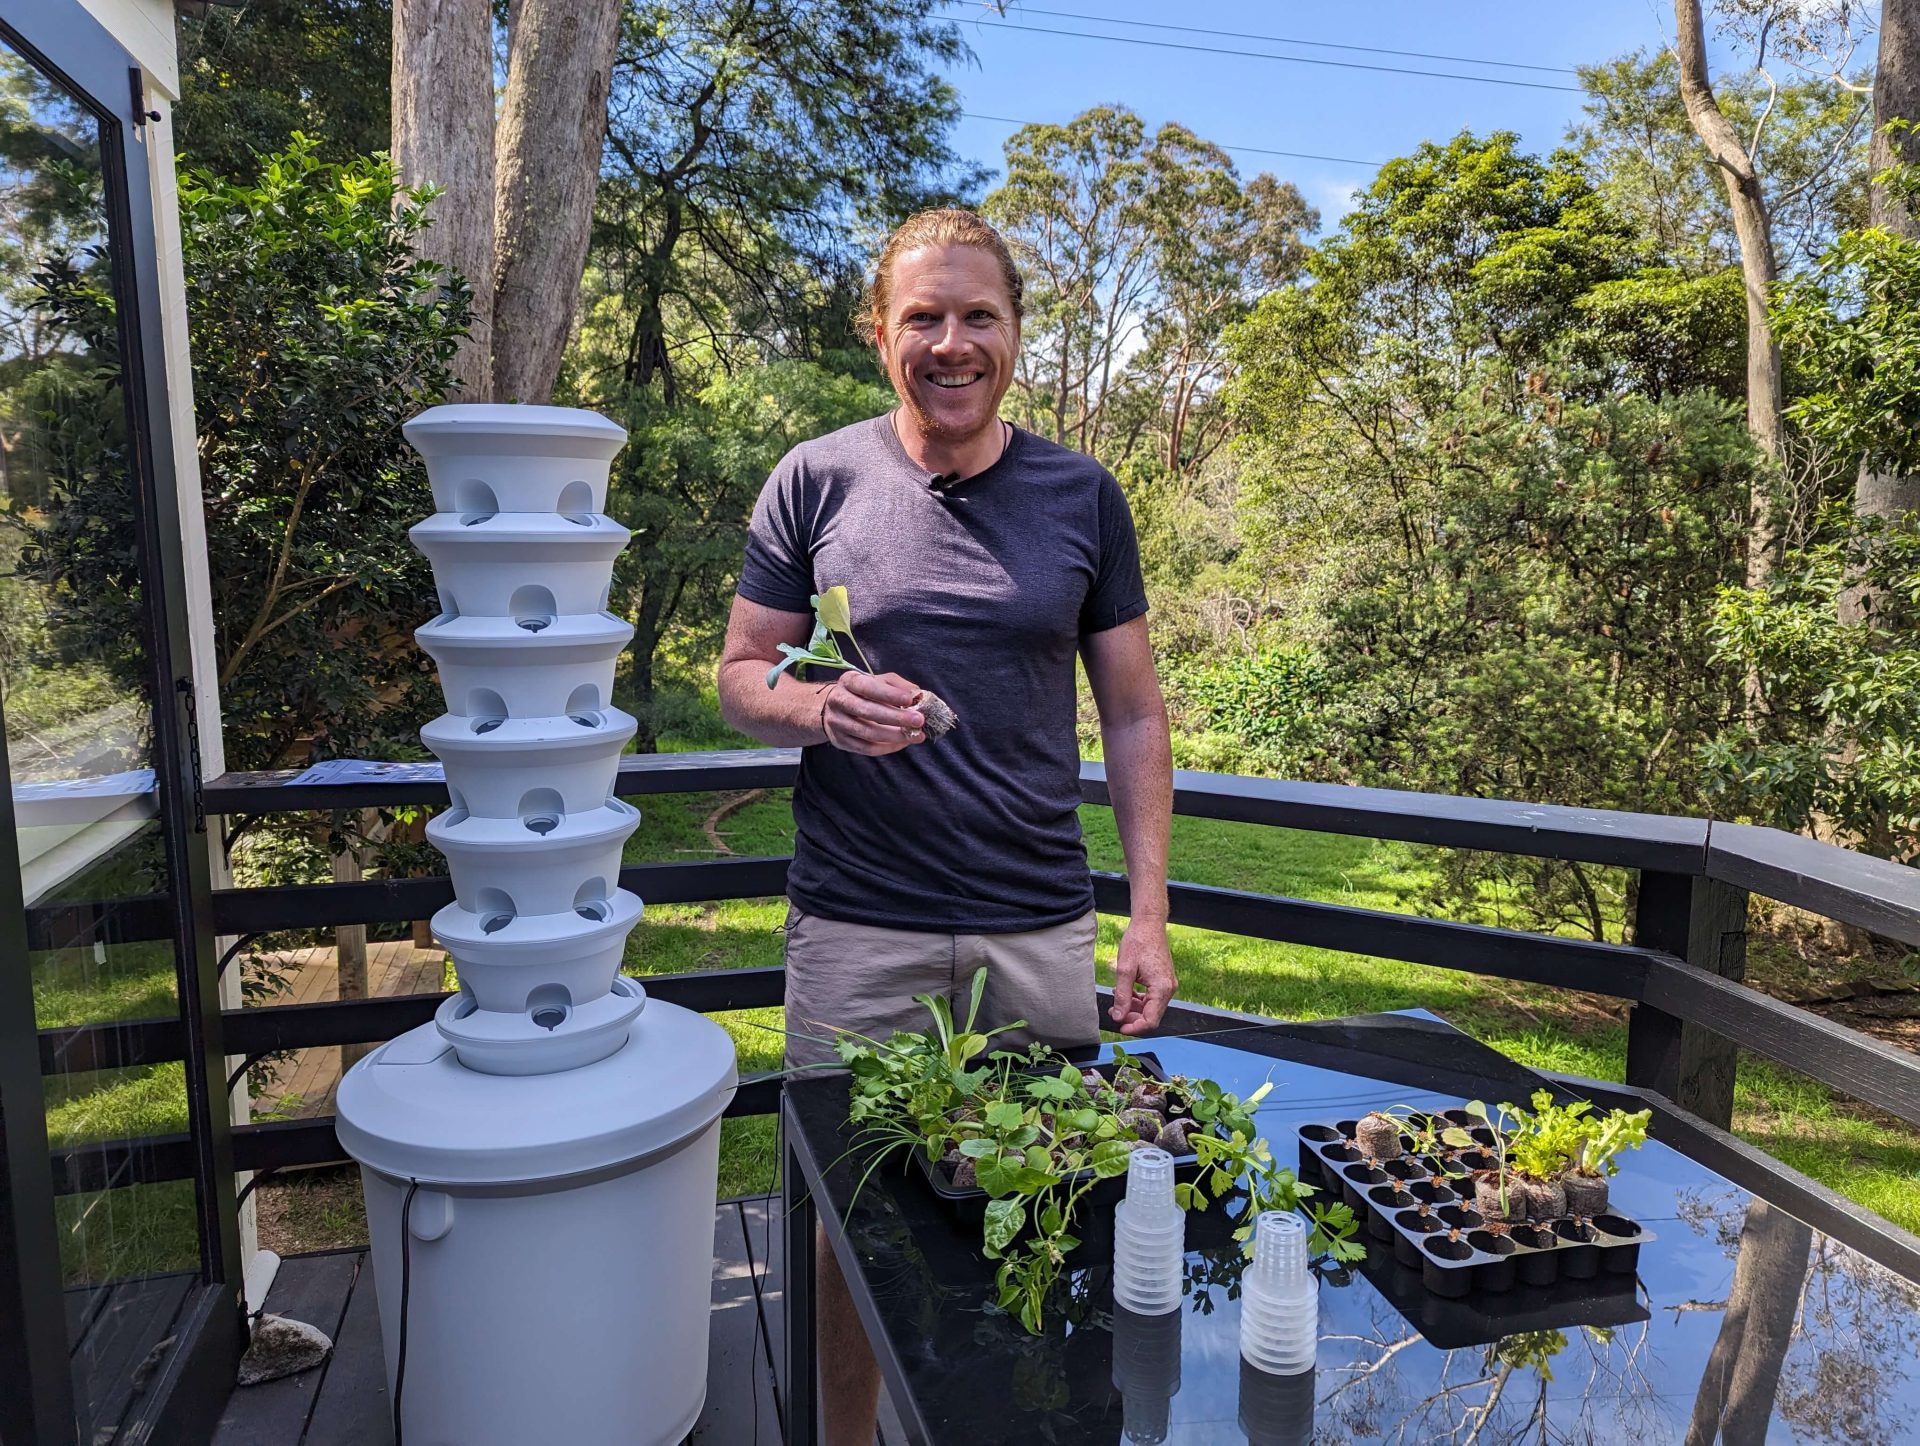 Nathan Schwartz preparing his aeroponic tower garden